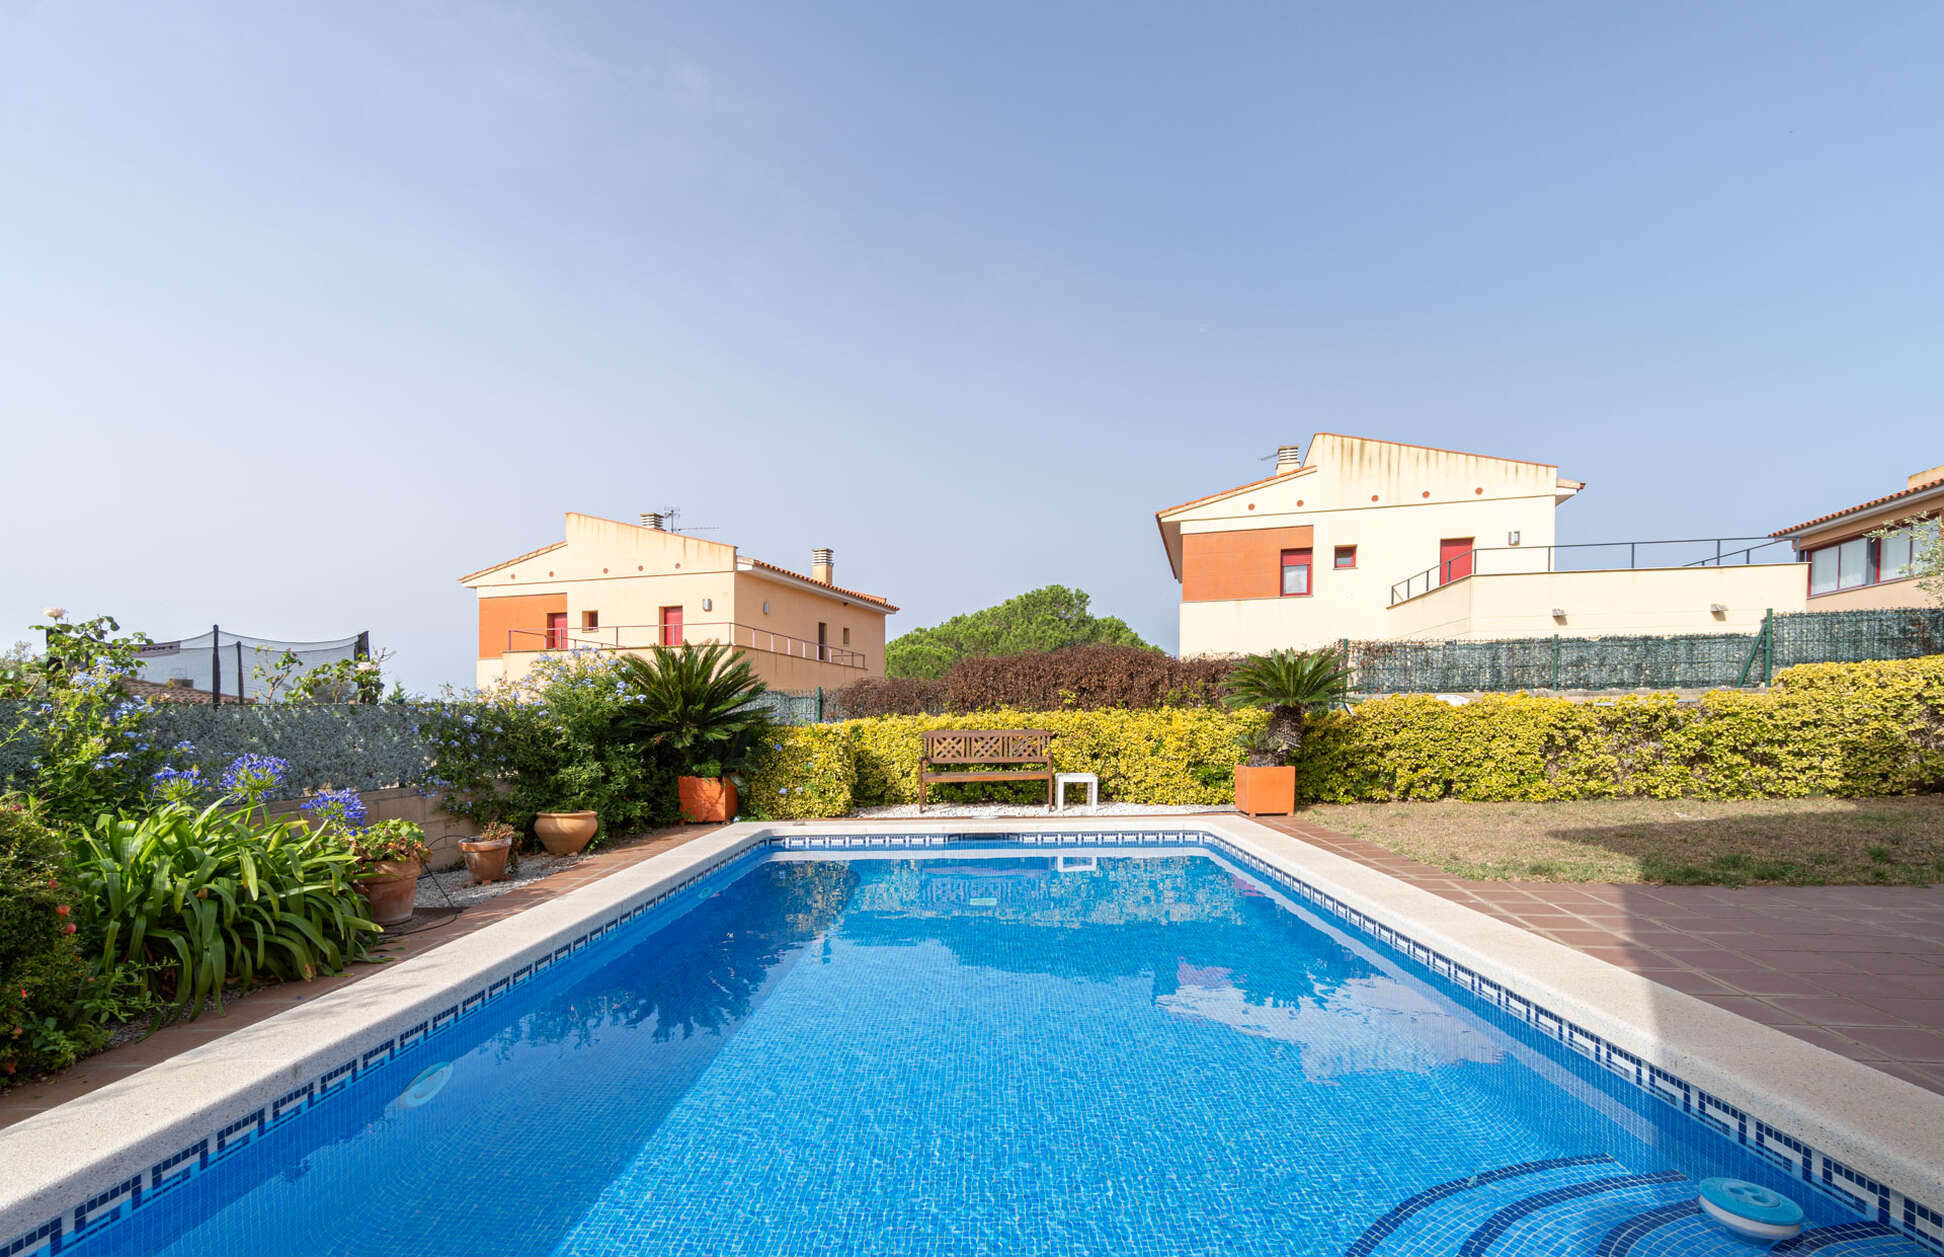 Bonita casa unifamiliar con piscina en venta en Garriguella